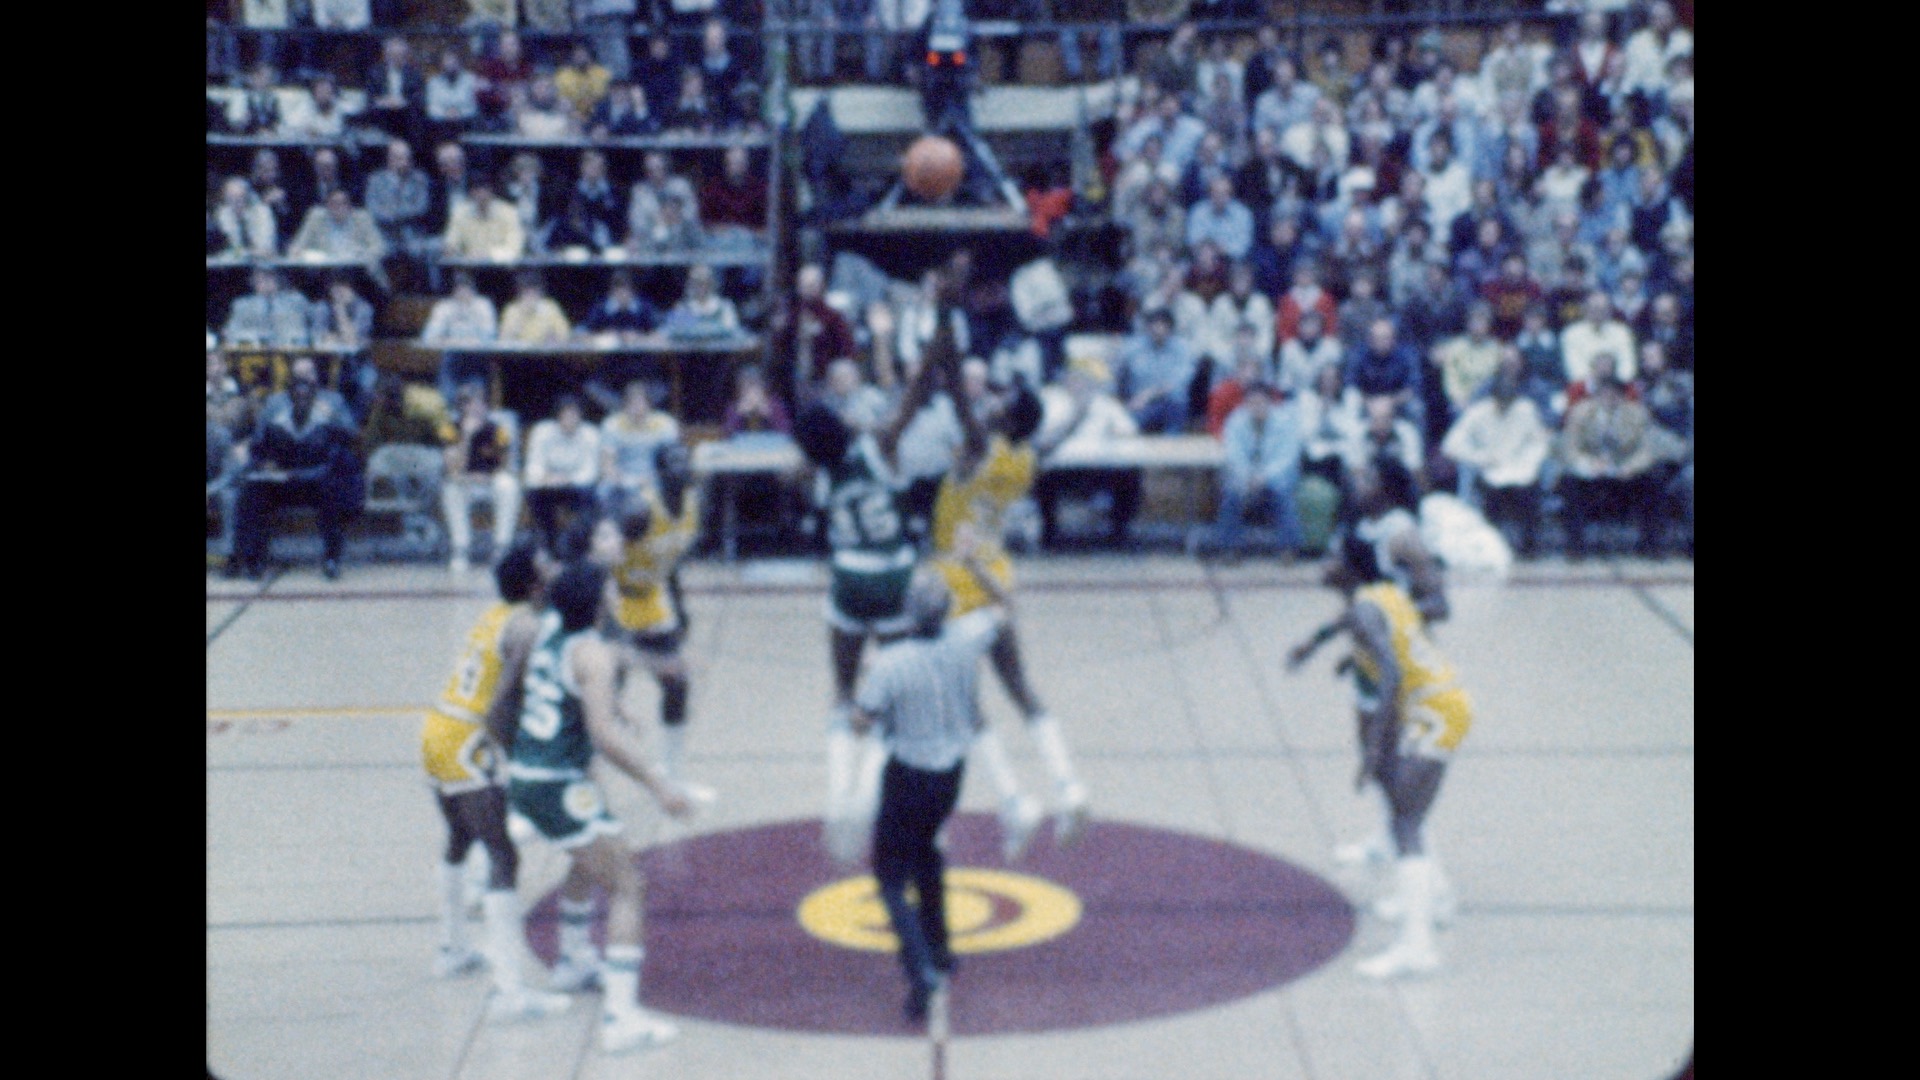 MSU Basketball vs. Central Michigan, 1979